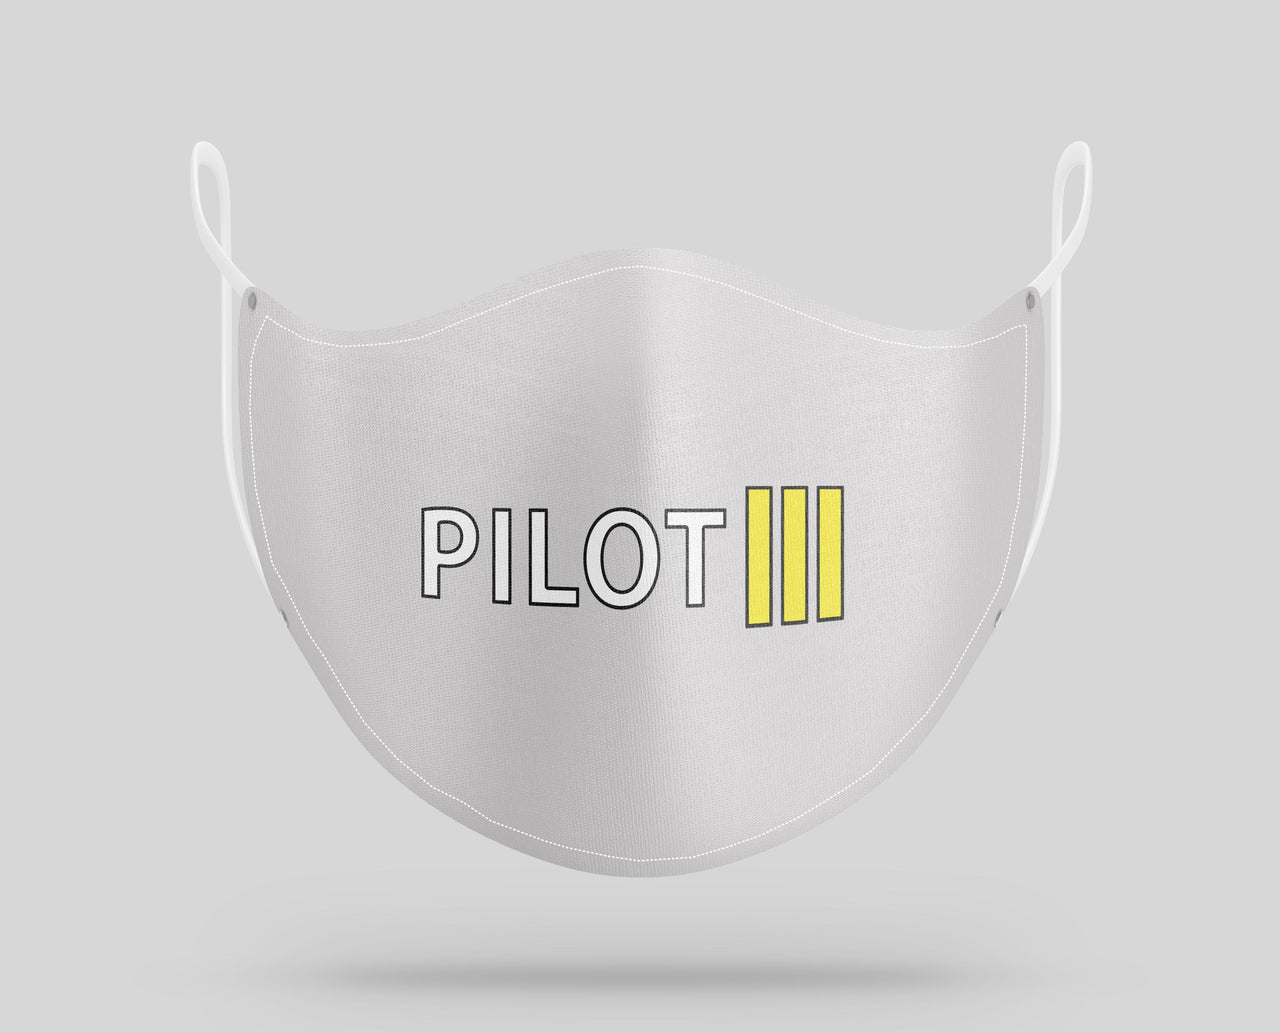 Pilot & Stripes (3 Lines) Designed Face Masks